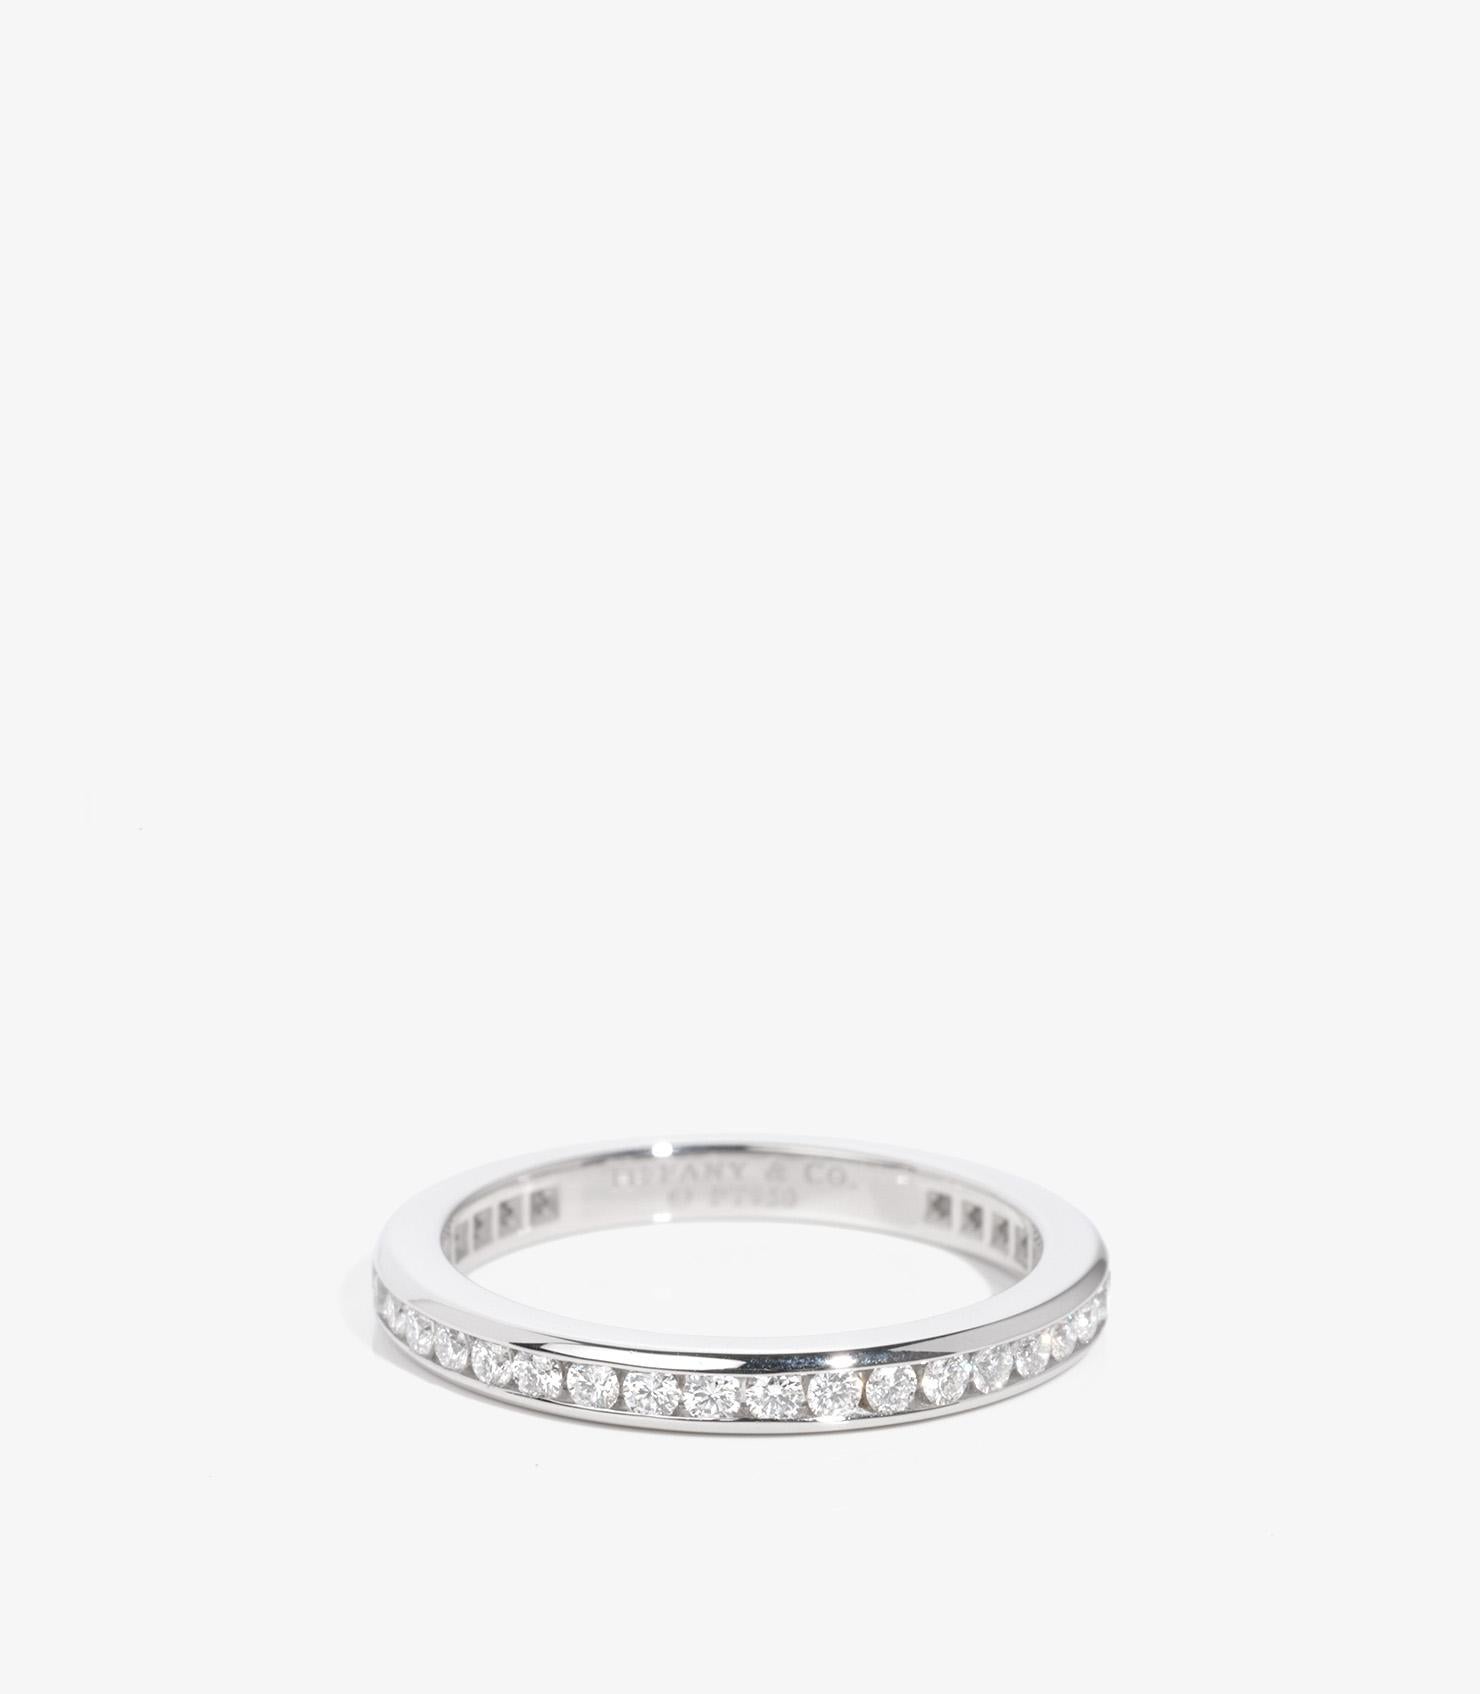 Tiffany & Co. Brillantschliff Diamant Platin Ring für die Ewigkeit

Marke - Tiffany & Co.
Modell- Voller Ewigkeitsring
Produkttyp- Ring
Begleitet von - Tiffany & Co. Box
MATERIAL(e)- Platin
Edelstein-Diamant
UK Ringgröße- I 3/4
EU-Ringgröße -